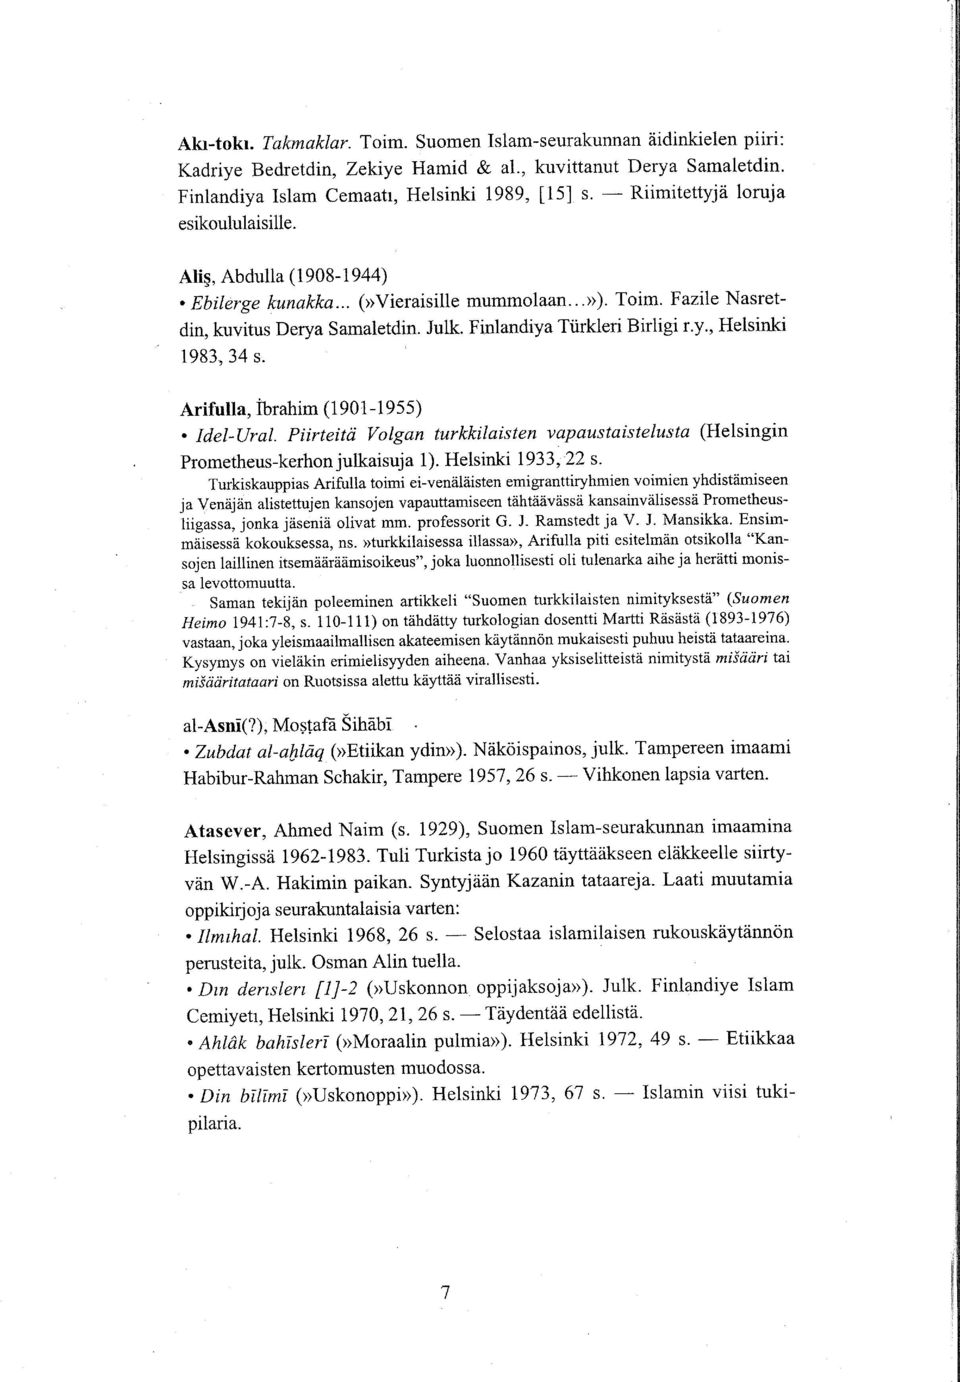 Finlandiya Türkleri Birligi r.y., Helsinki 1983, 34 s. Arifulla, ibrahim (1 90 1 1 955). IdelUral. Piirteitri Volgan turkkilaisten vapaustaistelusta (Helsingin Prometheuskerhon julkaisuja 1).